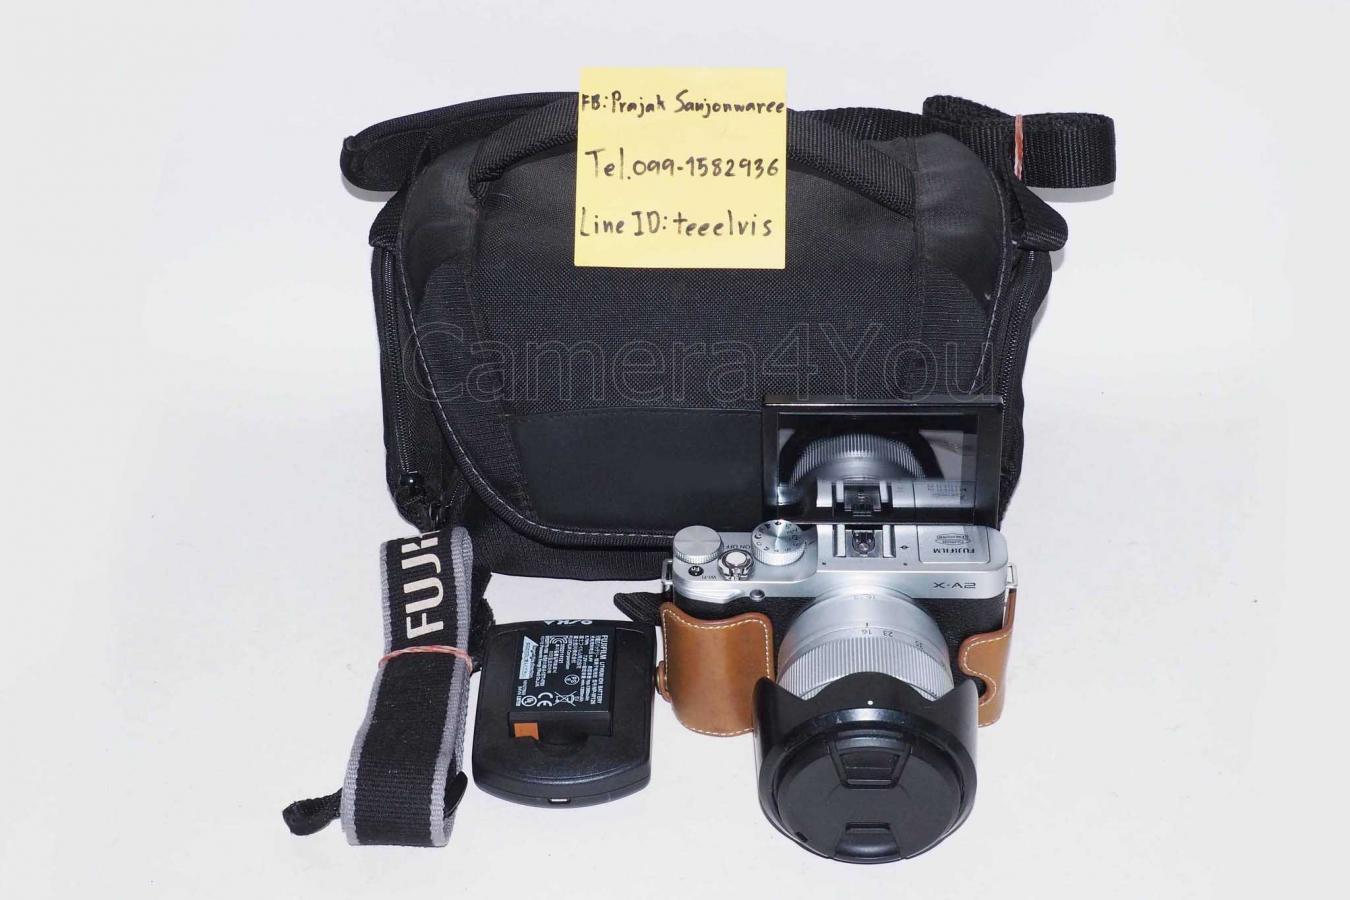 ขายกล้อง Fuji XA-2 พร้อมเลนส์ 16-50mm f3.5-5.6 OIS II  สภาพใหม่ ใช้งานปกติ แถมเคสและกระเป๋ากล้องให้ ไม่มีกล่อง